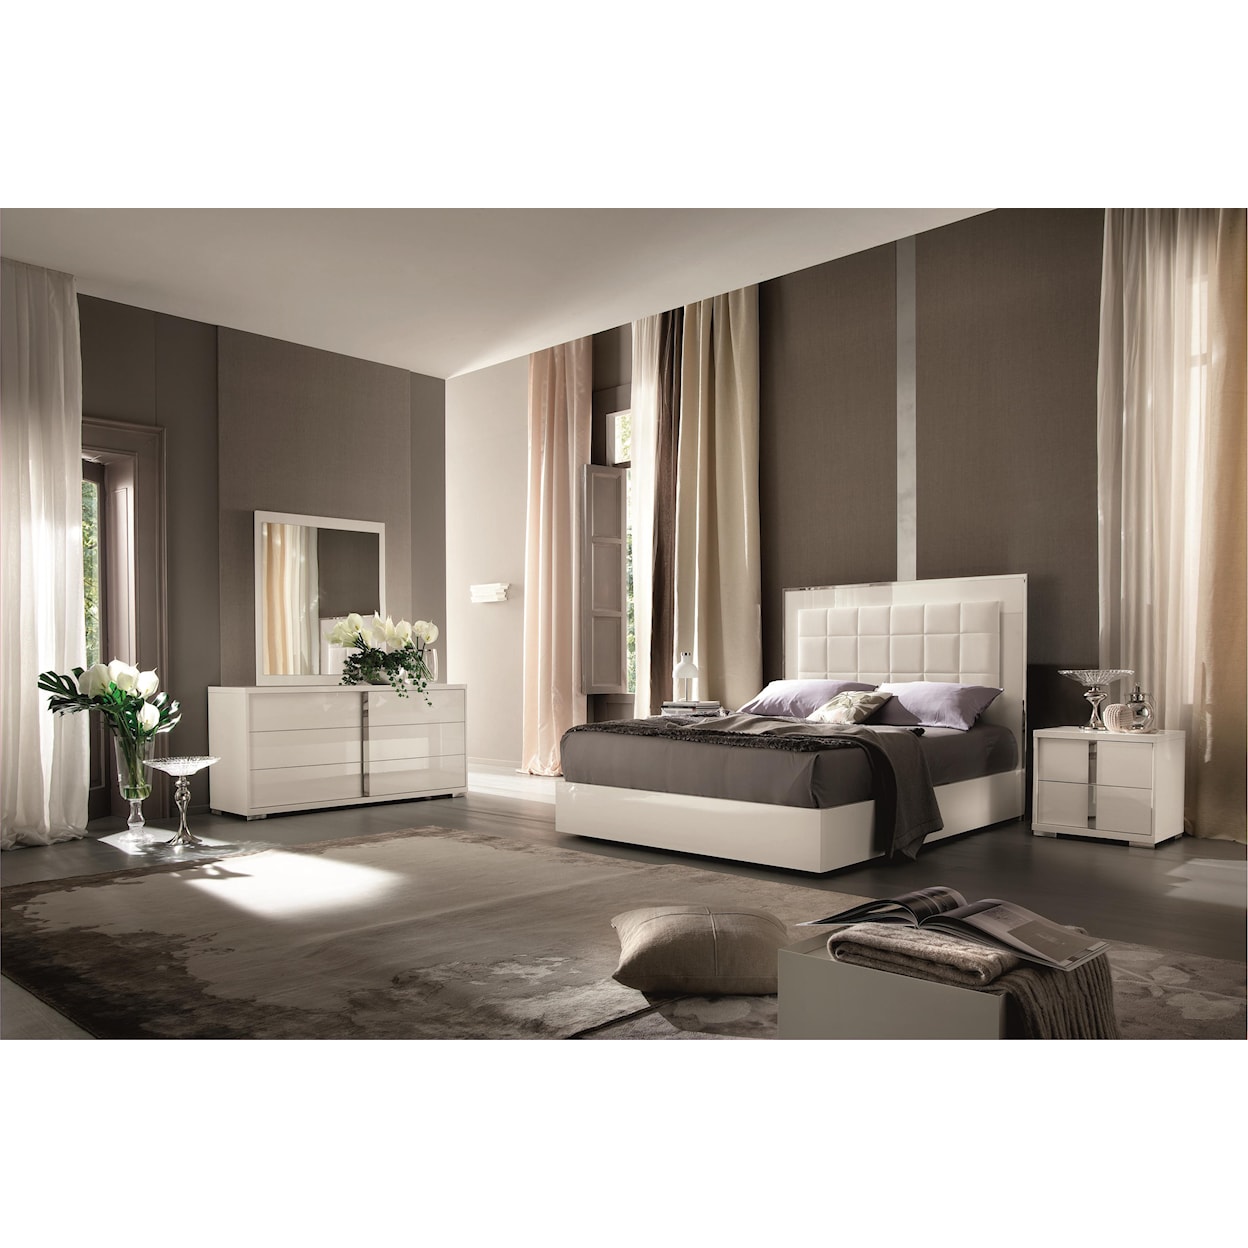 Alf Italia Imperia CK Bedroom Group